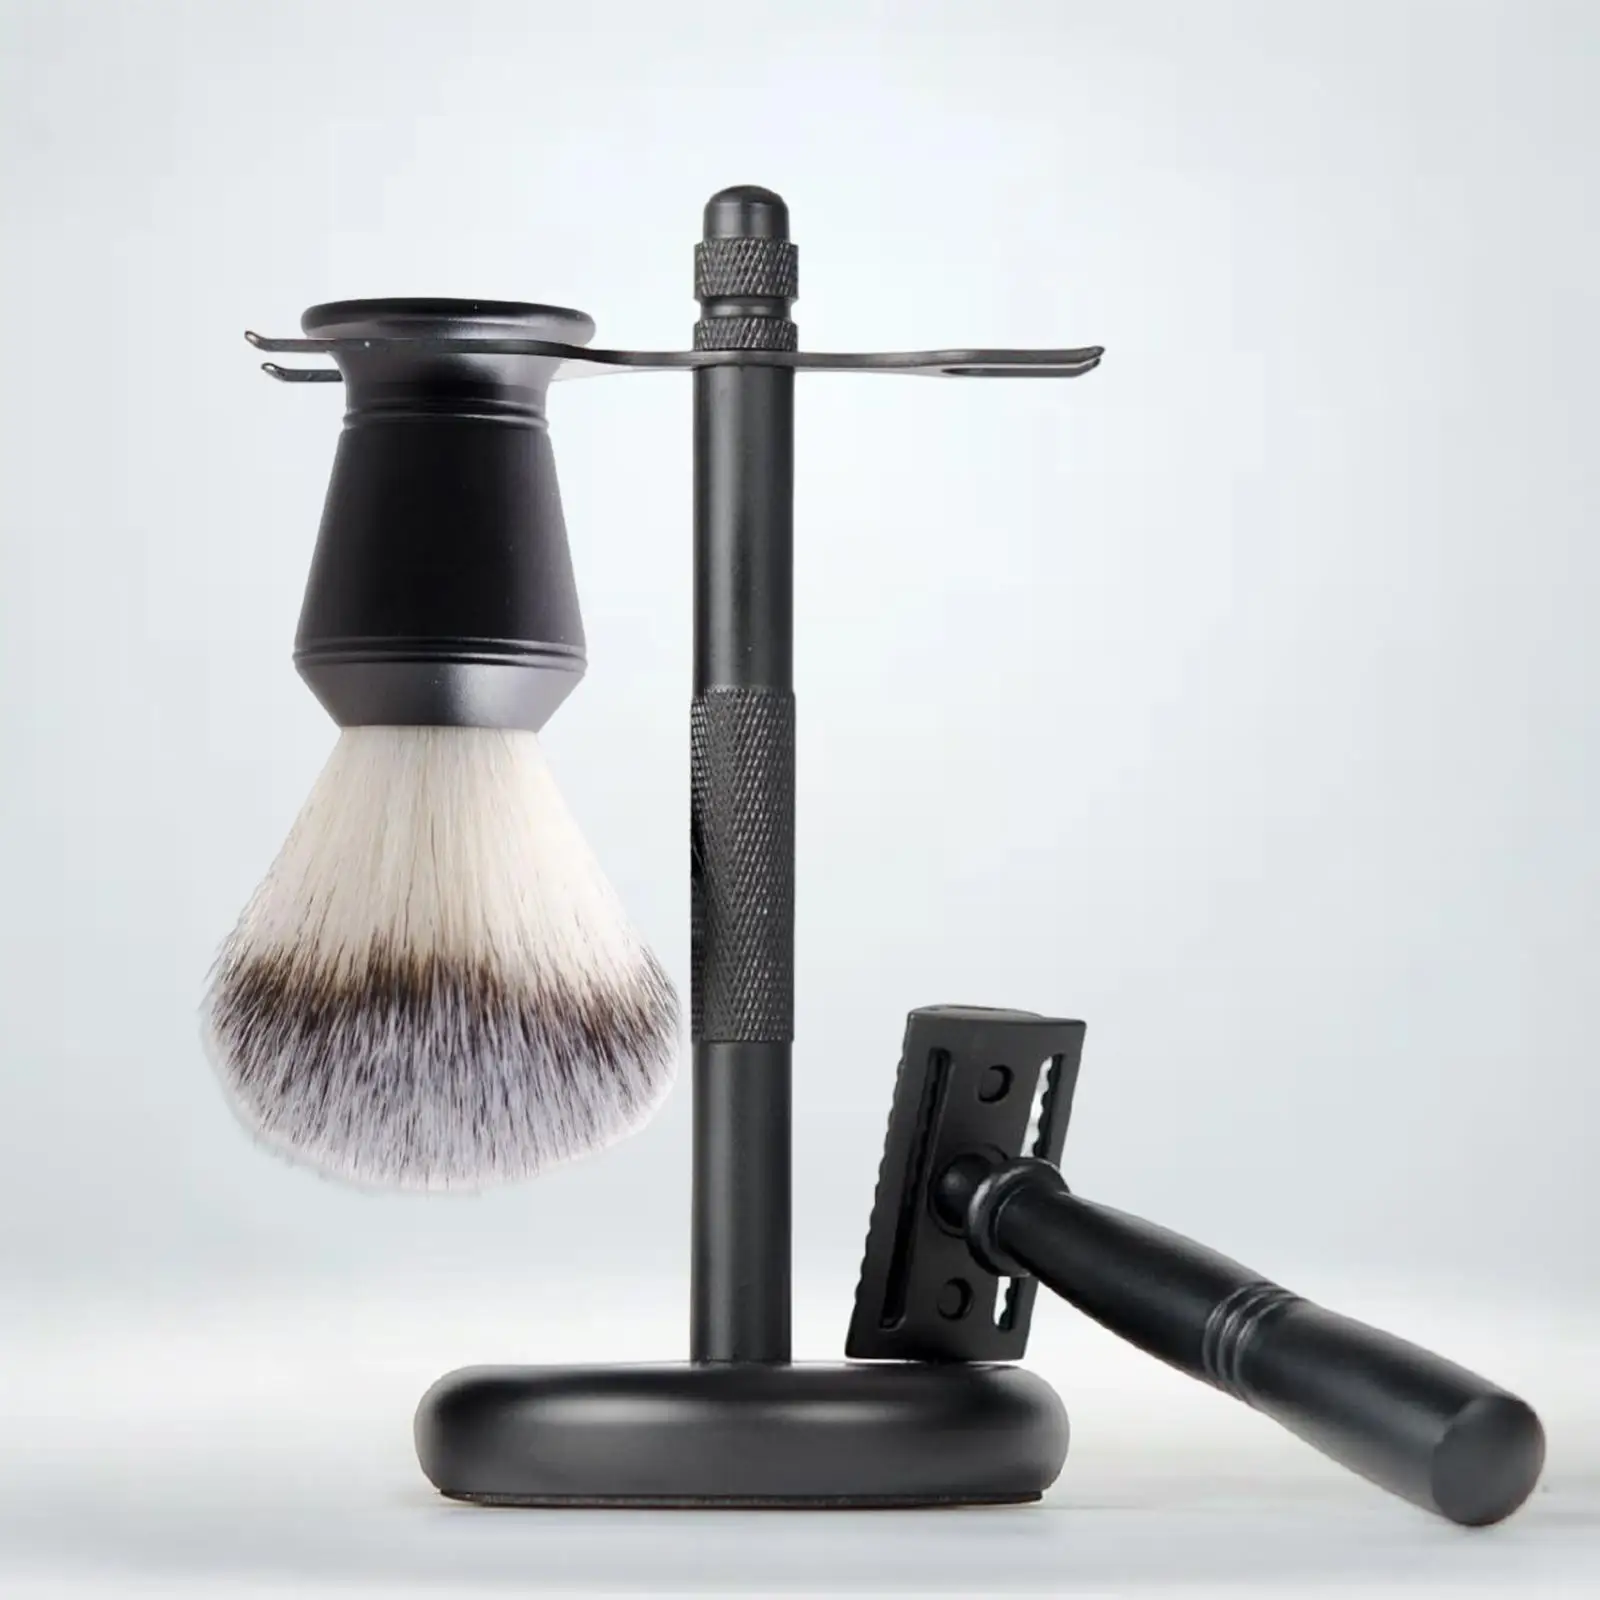 3x Shaving Kit for Men Black Elegant Shaving Cleaning Tool Shaving Razor+ Stand Holder +shaving Brush Set Father`s Day Gifts